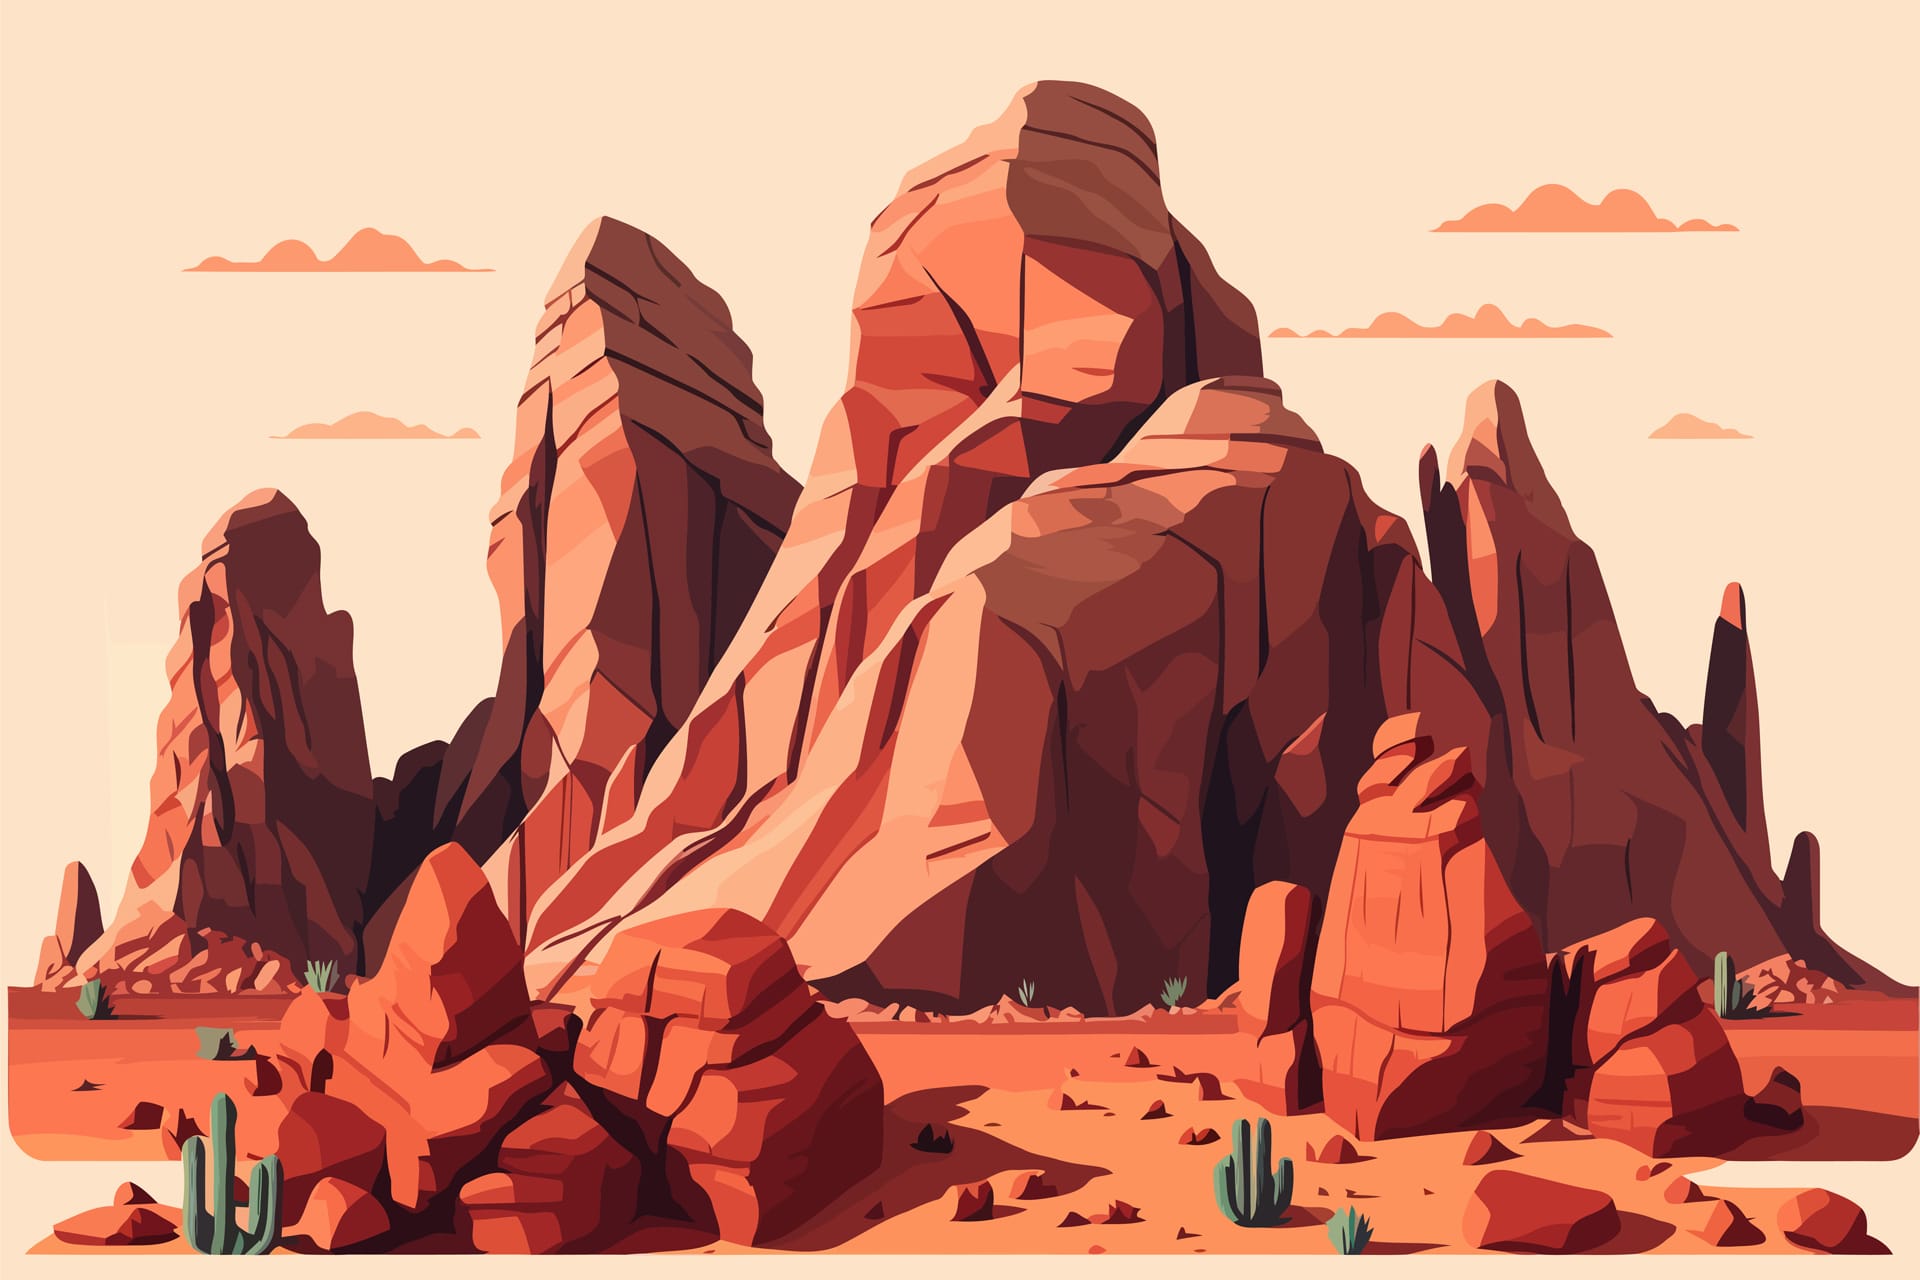 Desert landscape with red rocks cactuses illustration